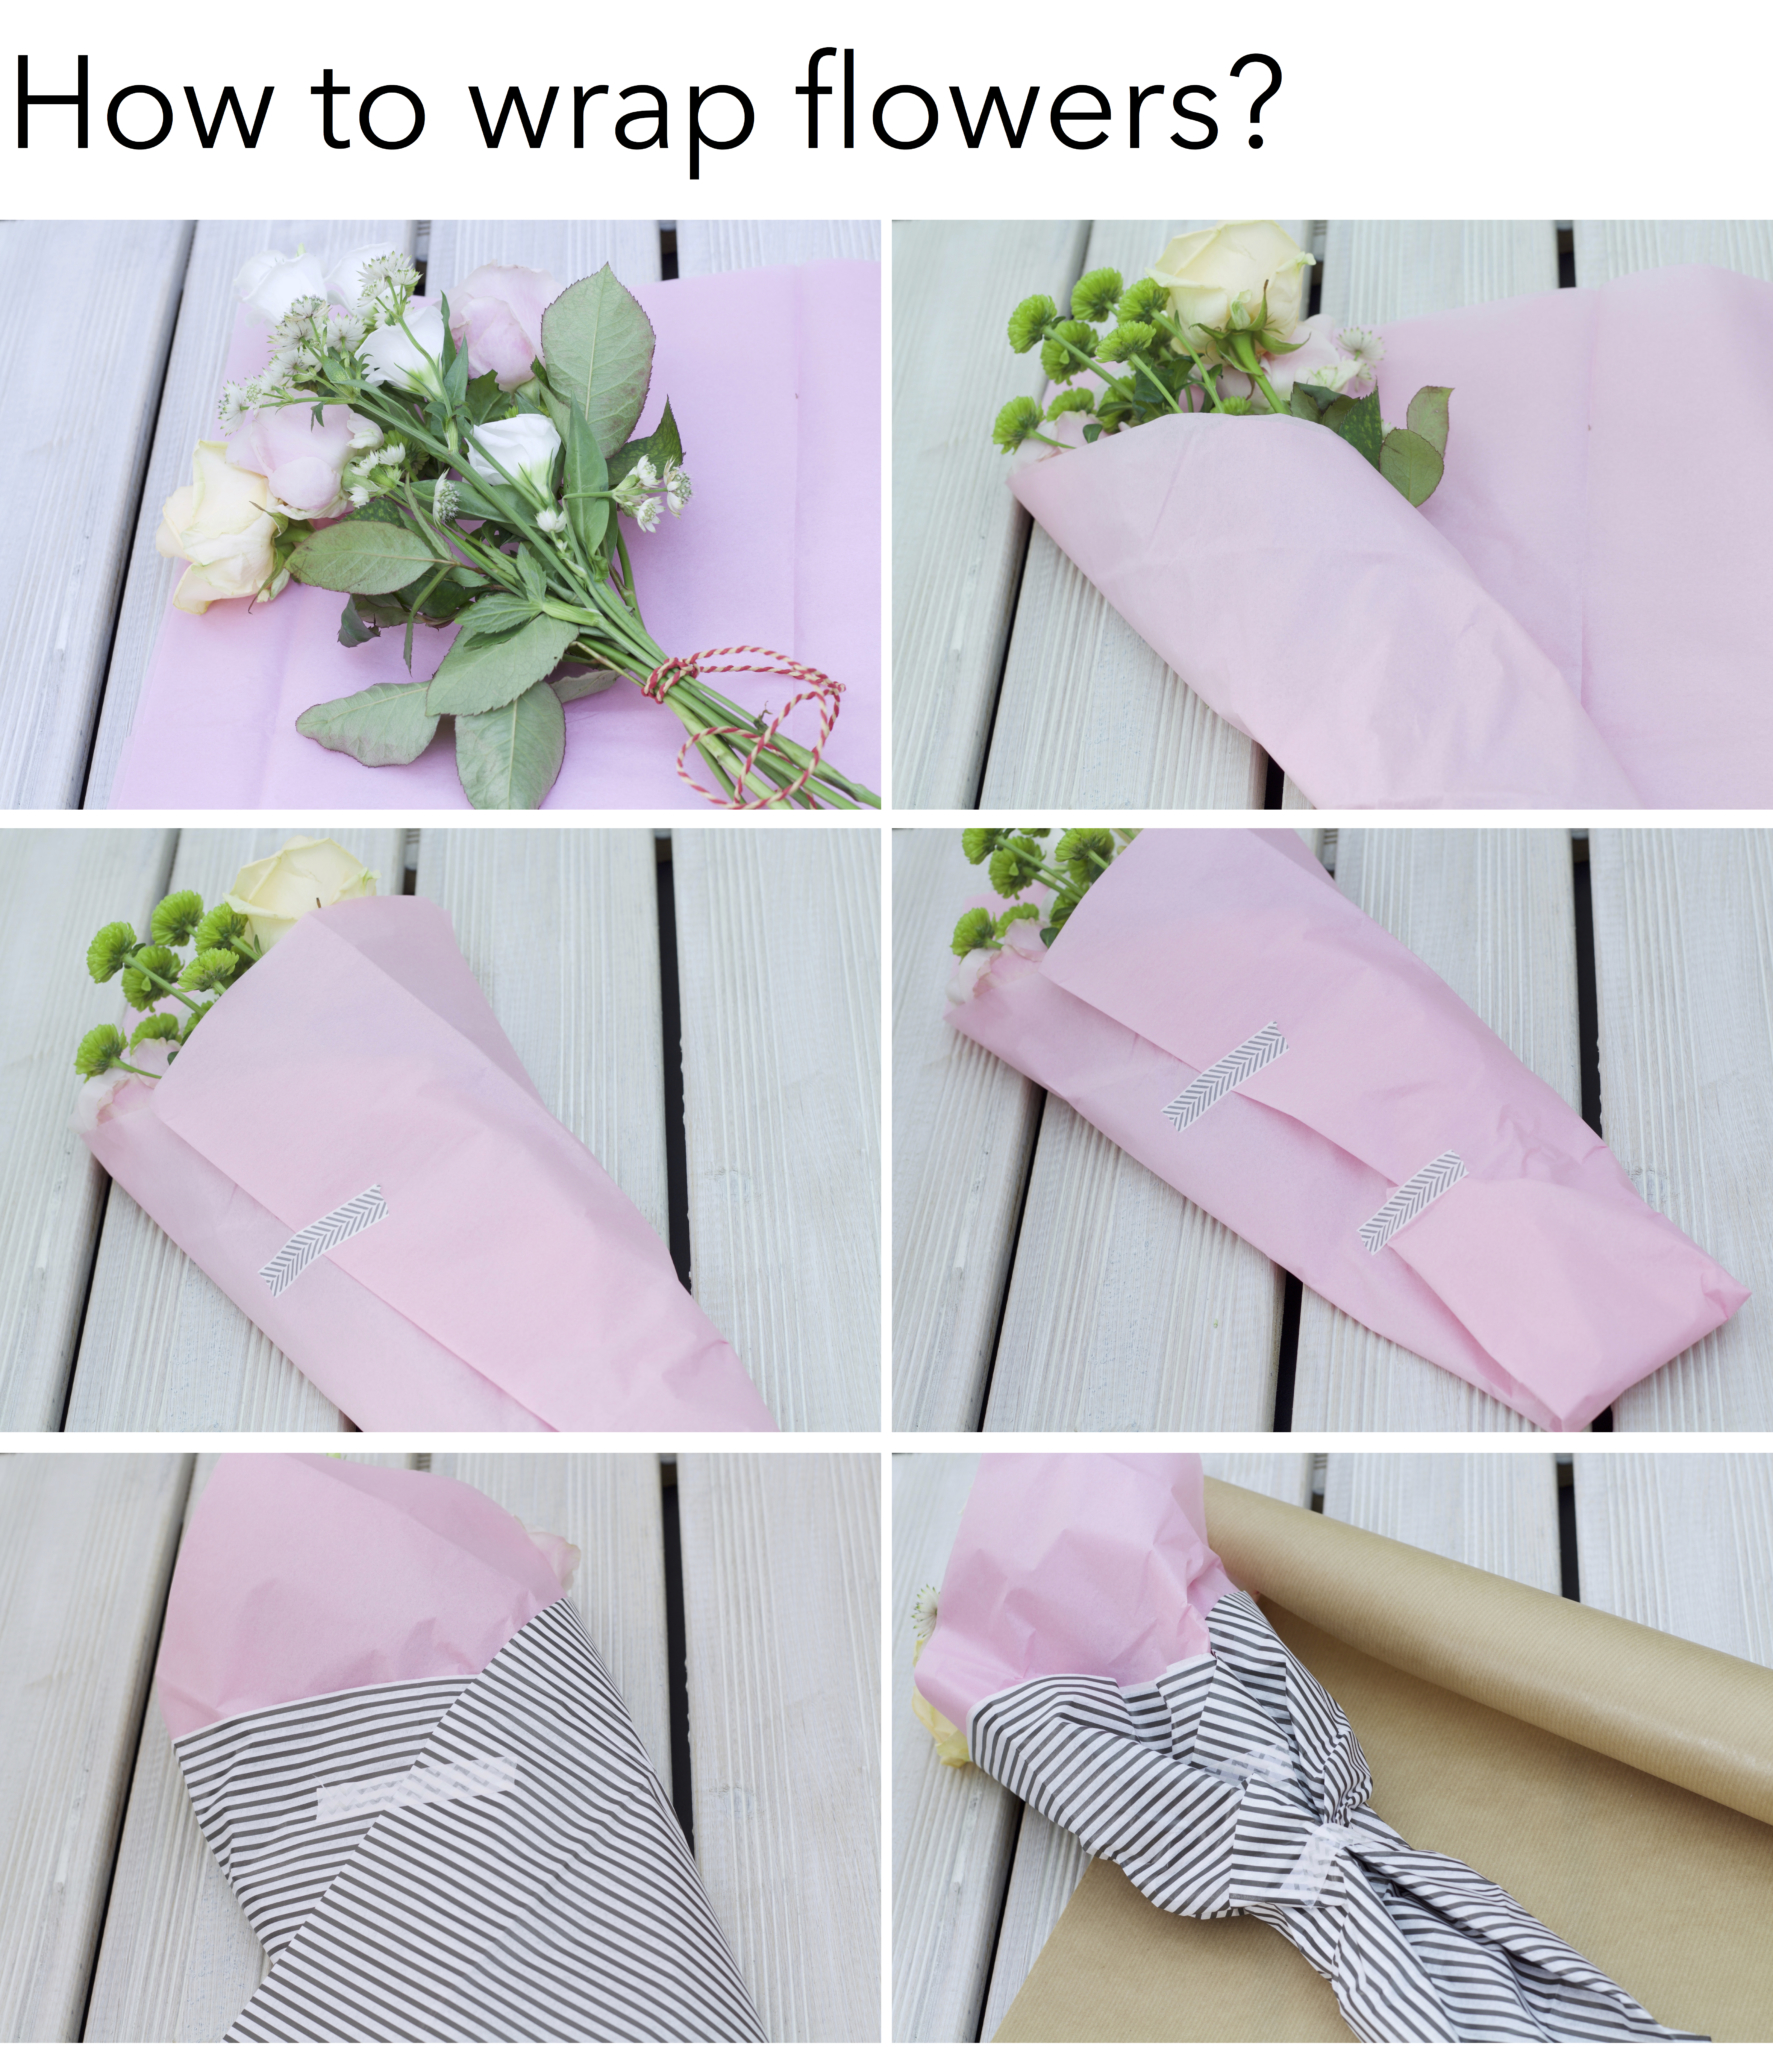 Schritt für Schritt Anleitung, wie man Blumen hübsch verpackt - mit Seidenpapier